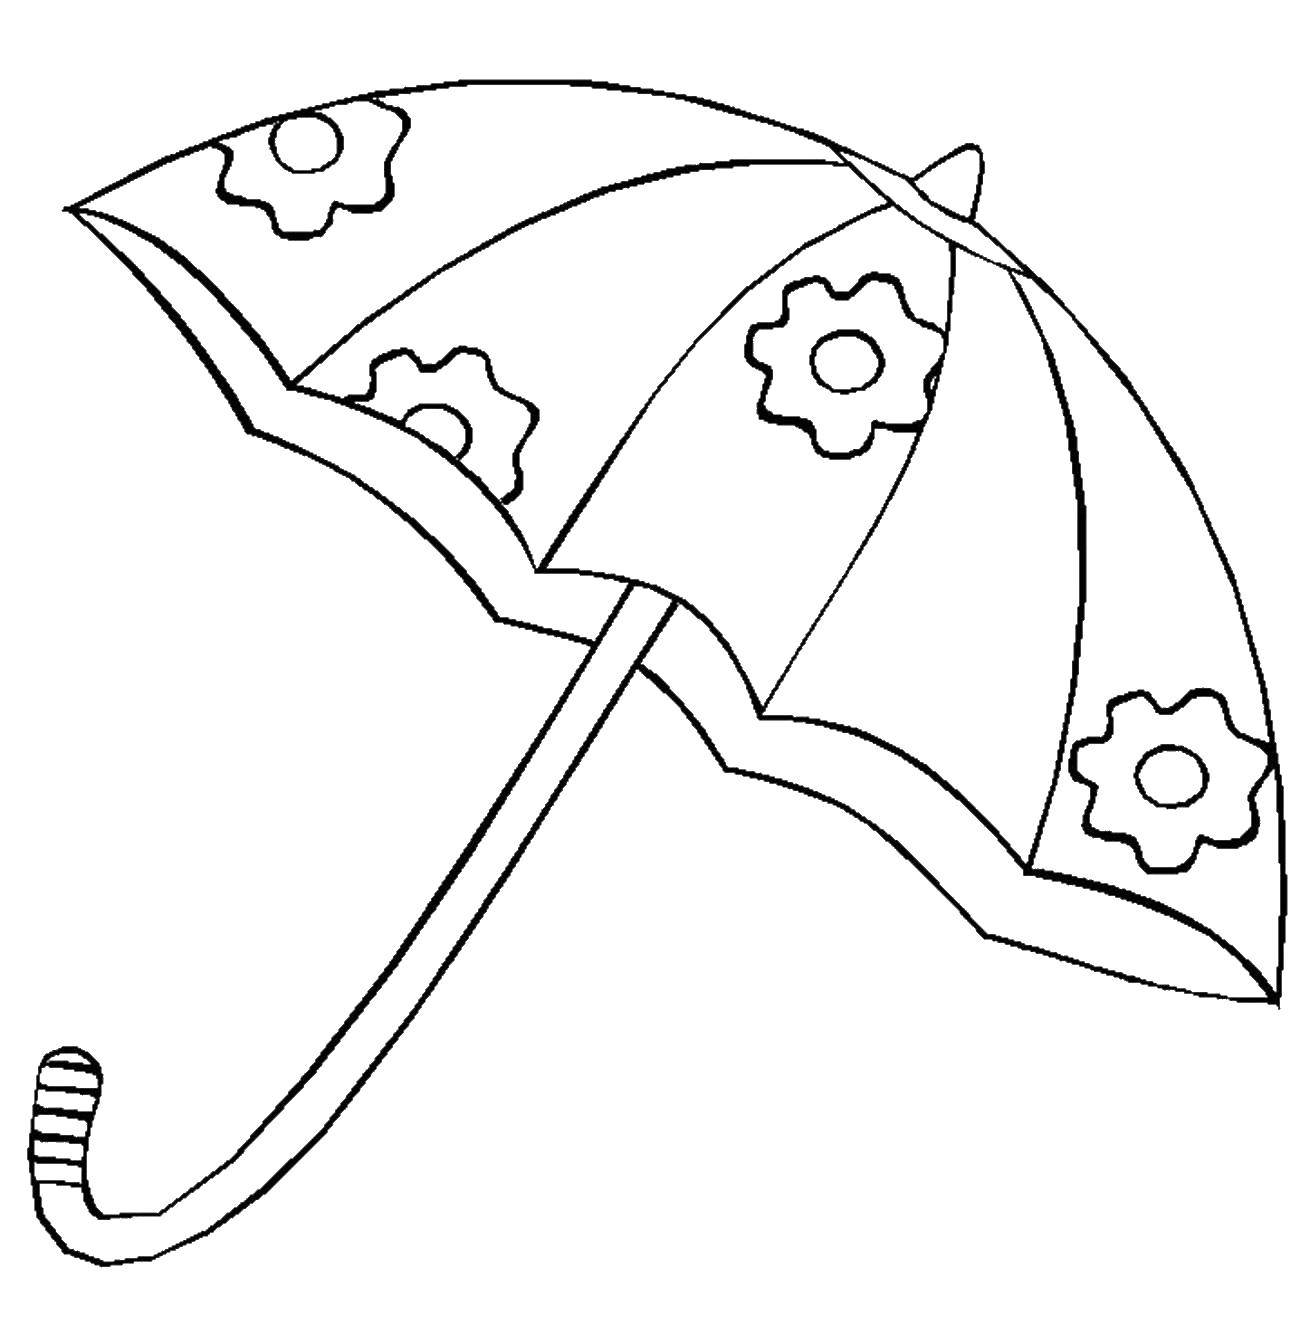 Распечатать зонтик. Зонт раскраска. Раскраска зонтик. Зонт раскраска для детей. Раскраскаидля малышей.